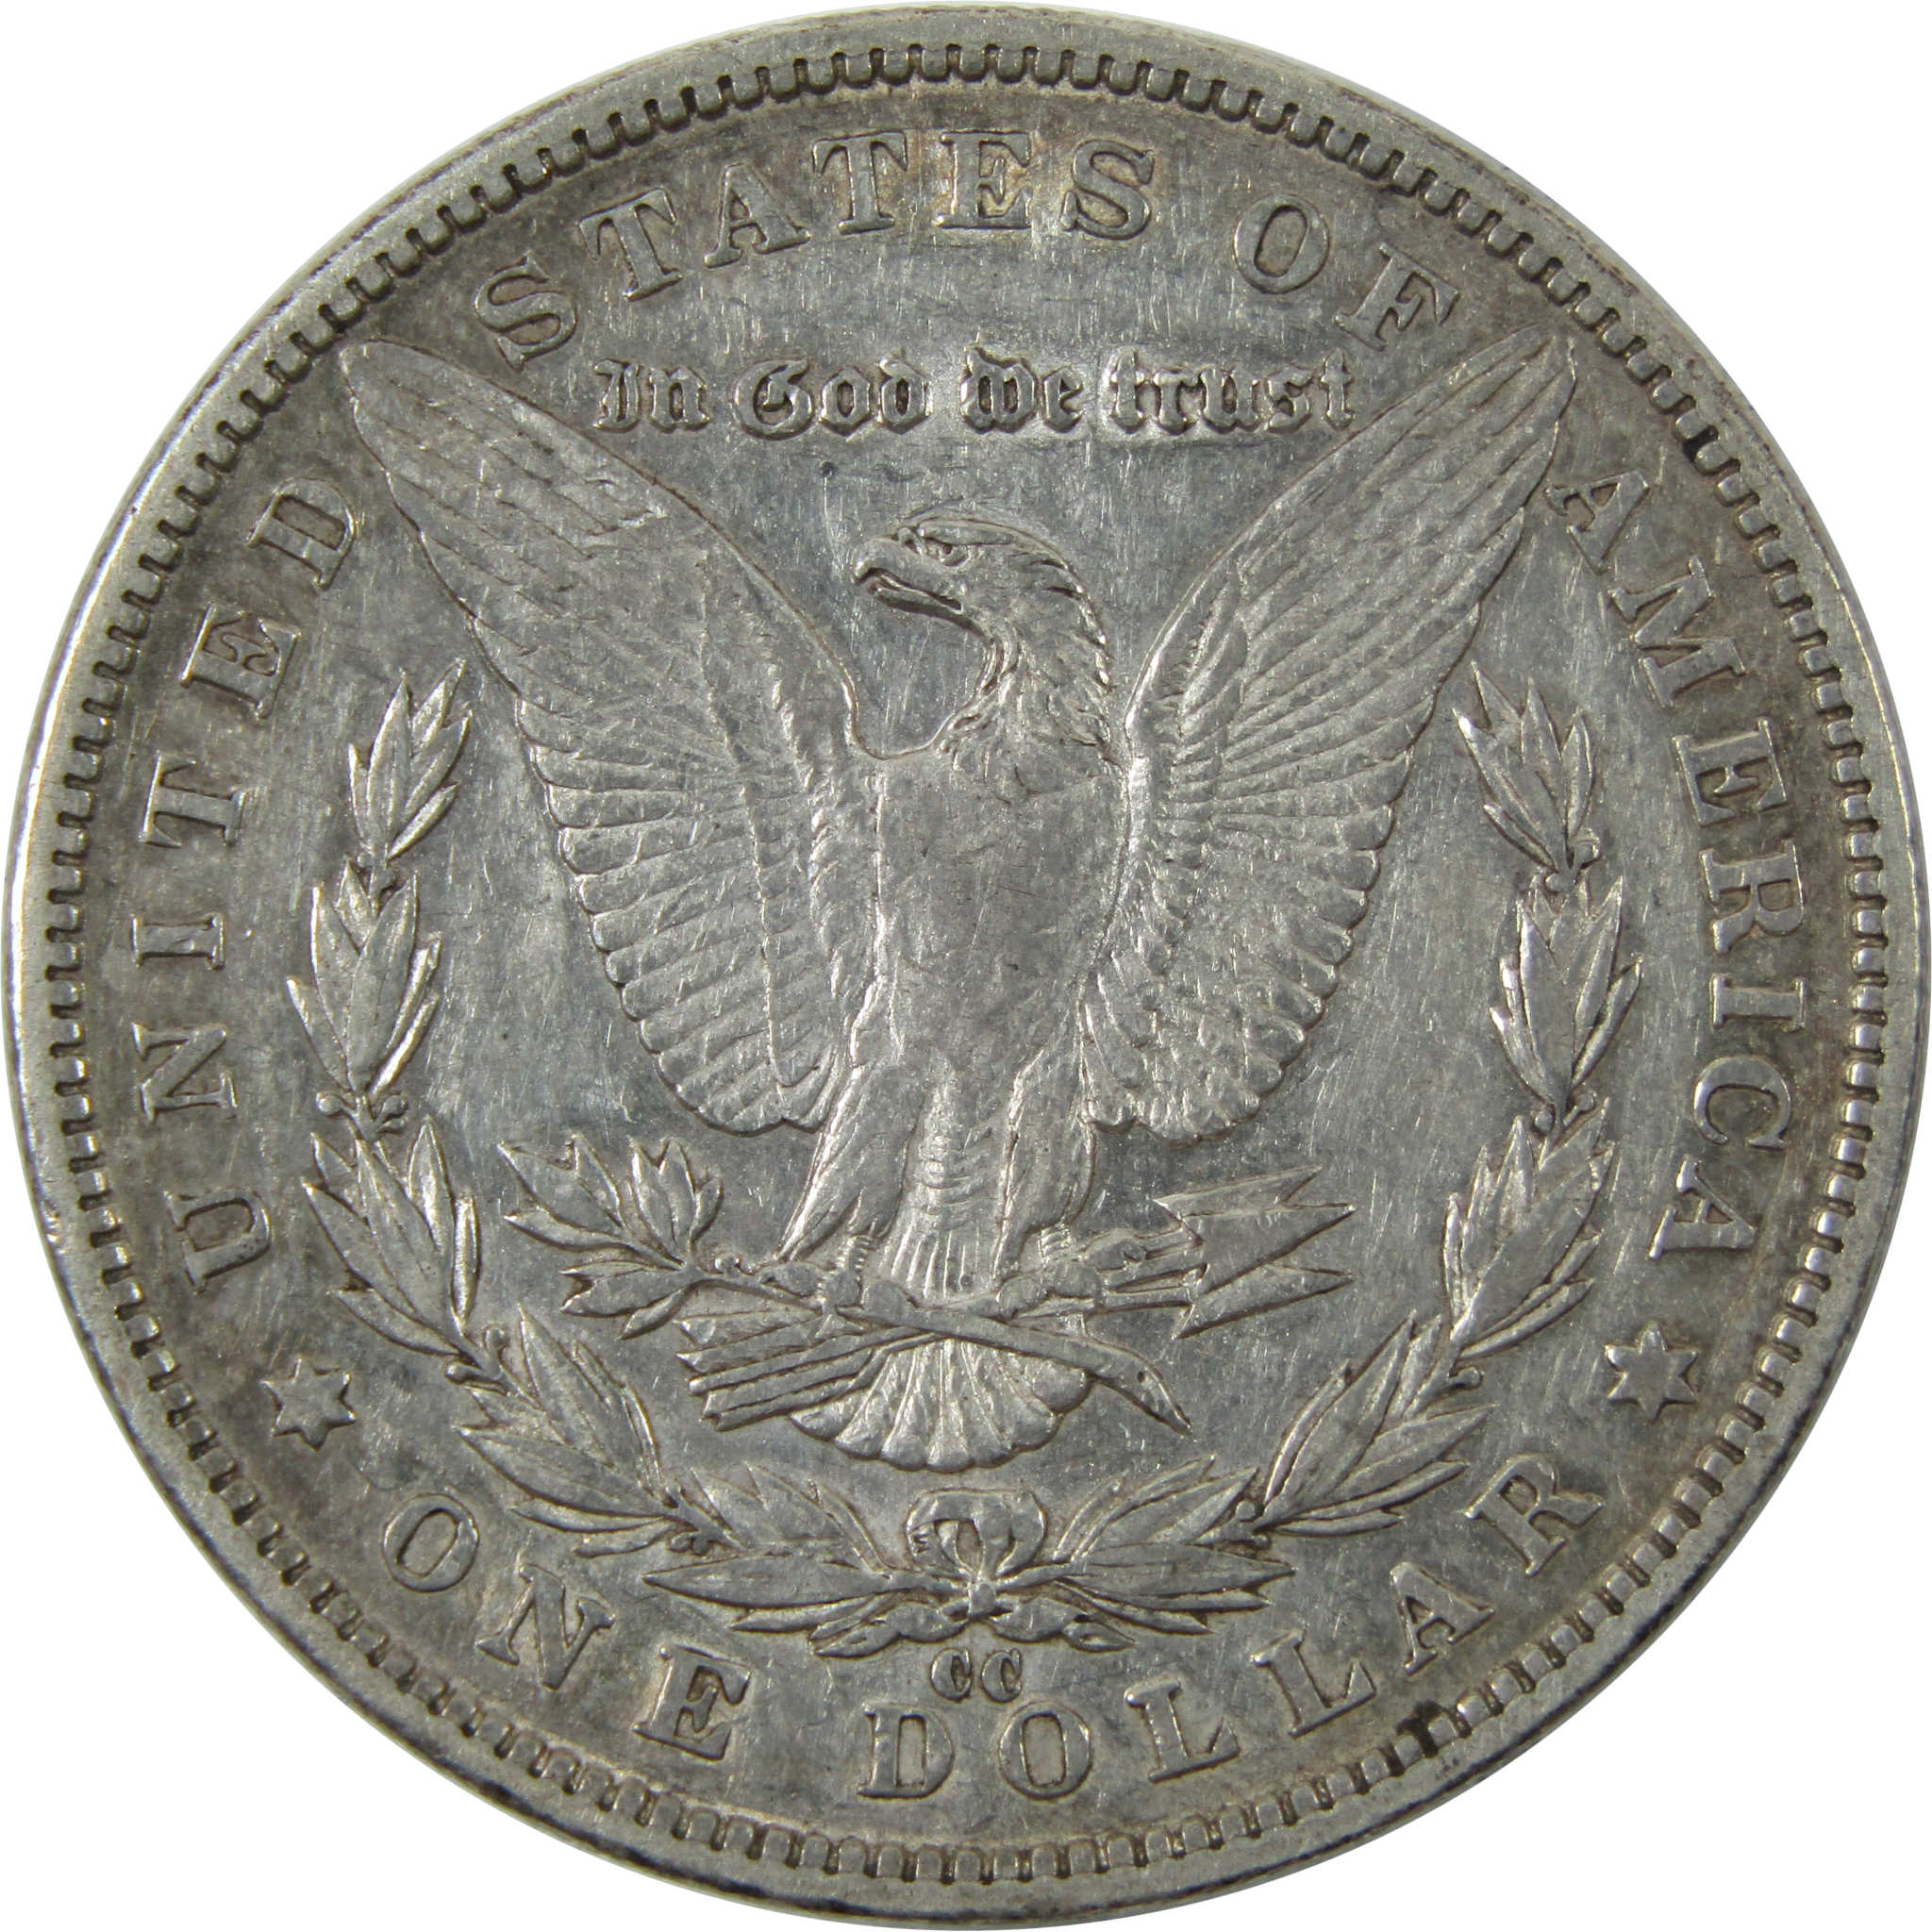 1890 CC Morgan Dollar XF EF Extremely Fine Silver $1 Coin SKU:I14221